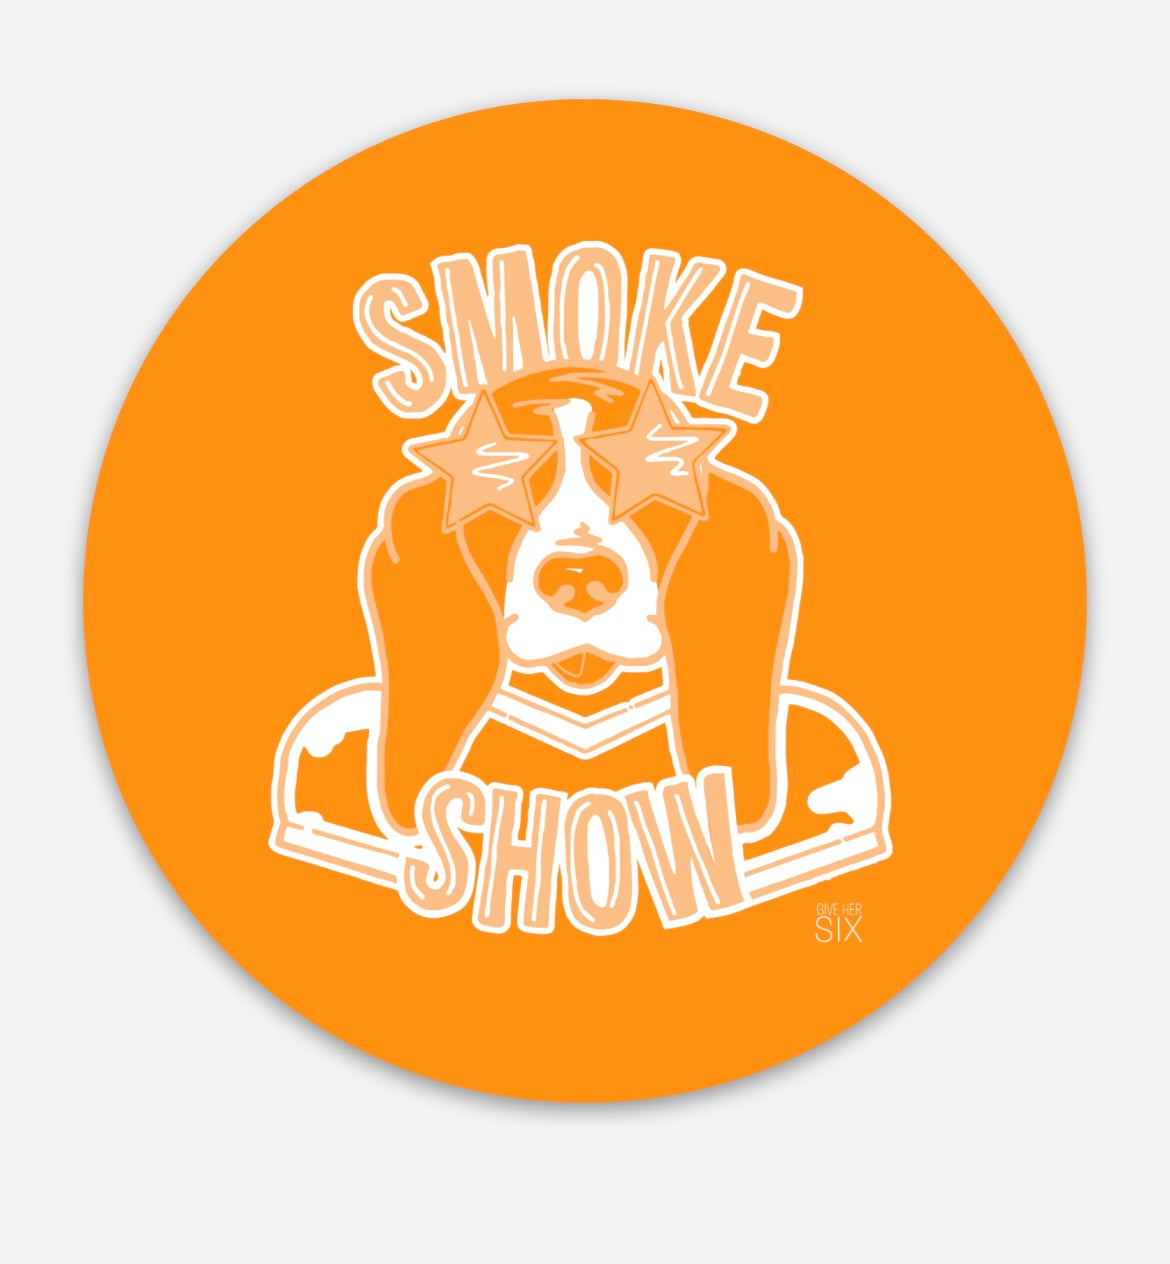 Smoke Show Sticker